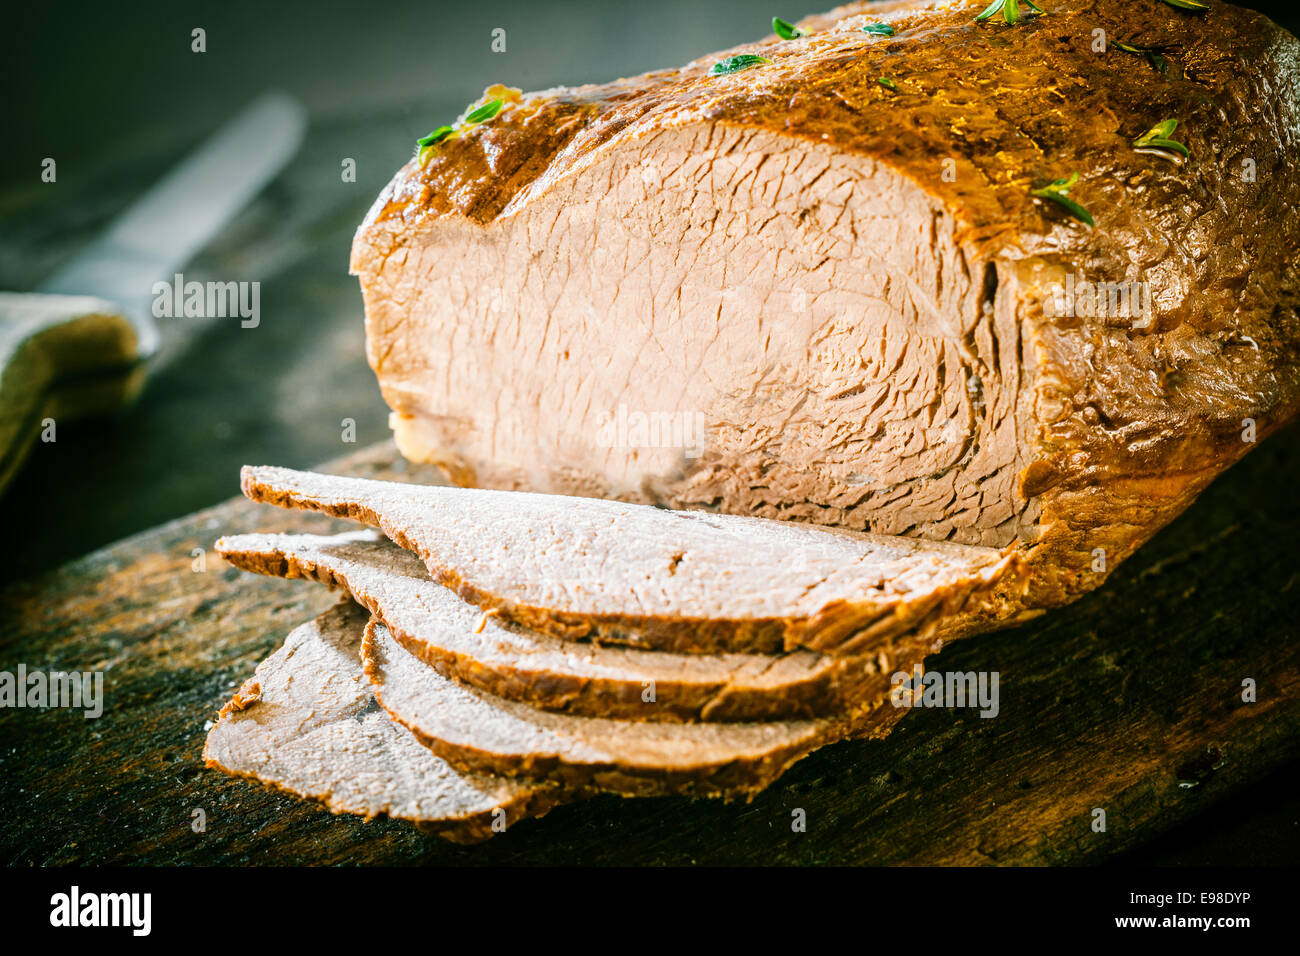 Deliziosi tedesco intagliato pagnotta di carne fatta di gustosa carne macinata di manzo e maiale cotto in casseruola e condita con erbe aromatiche, vicino la vista che mostra la struttura Foto Stock